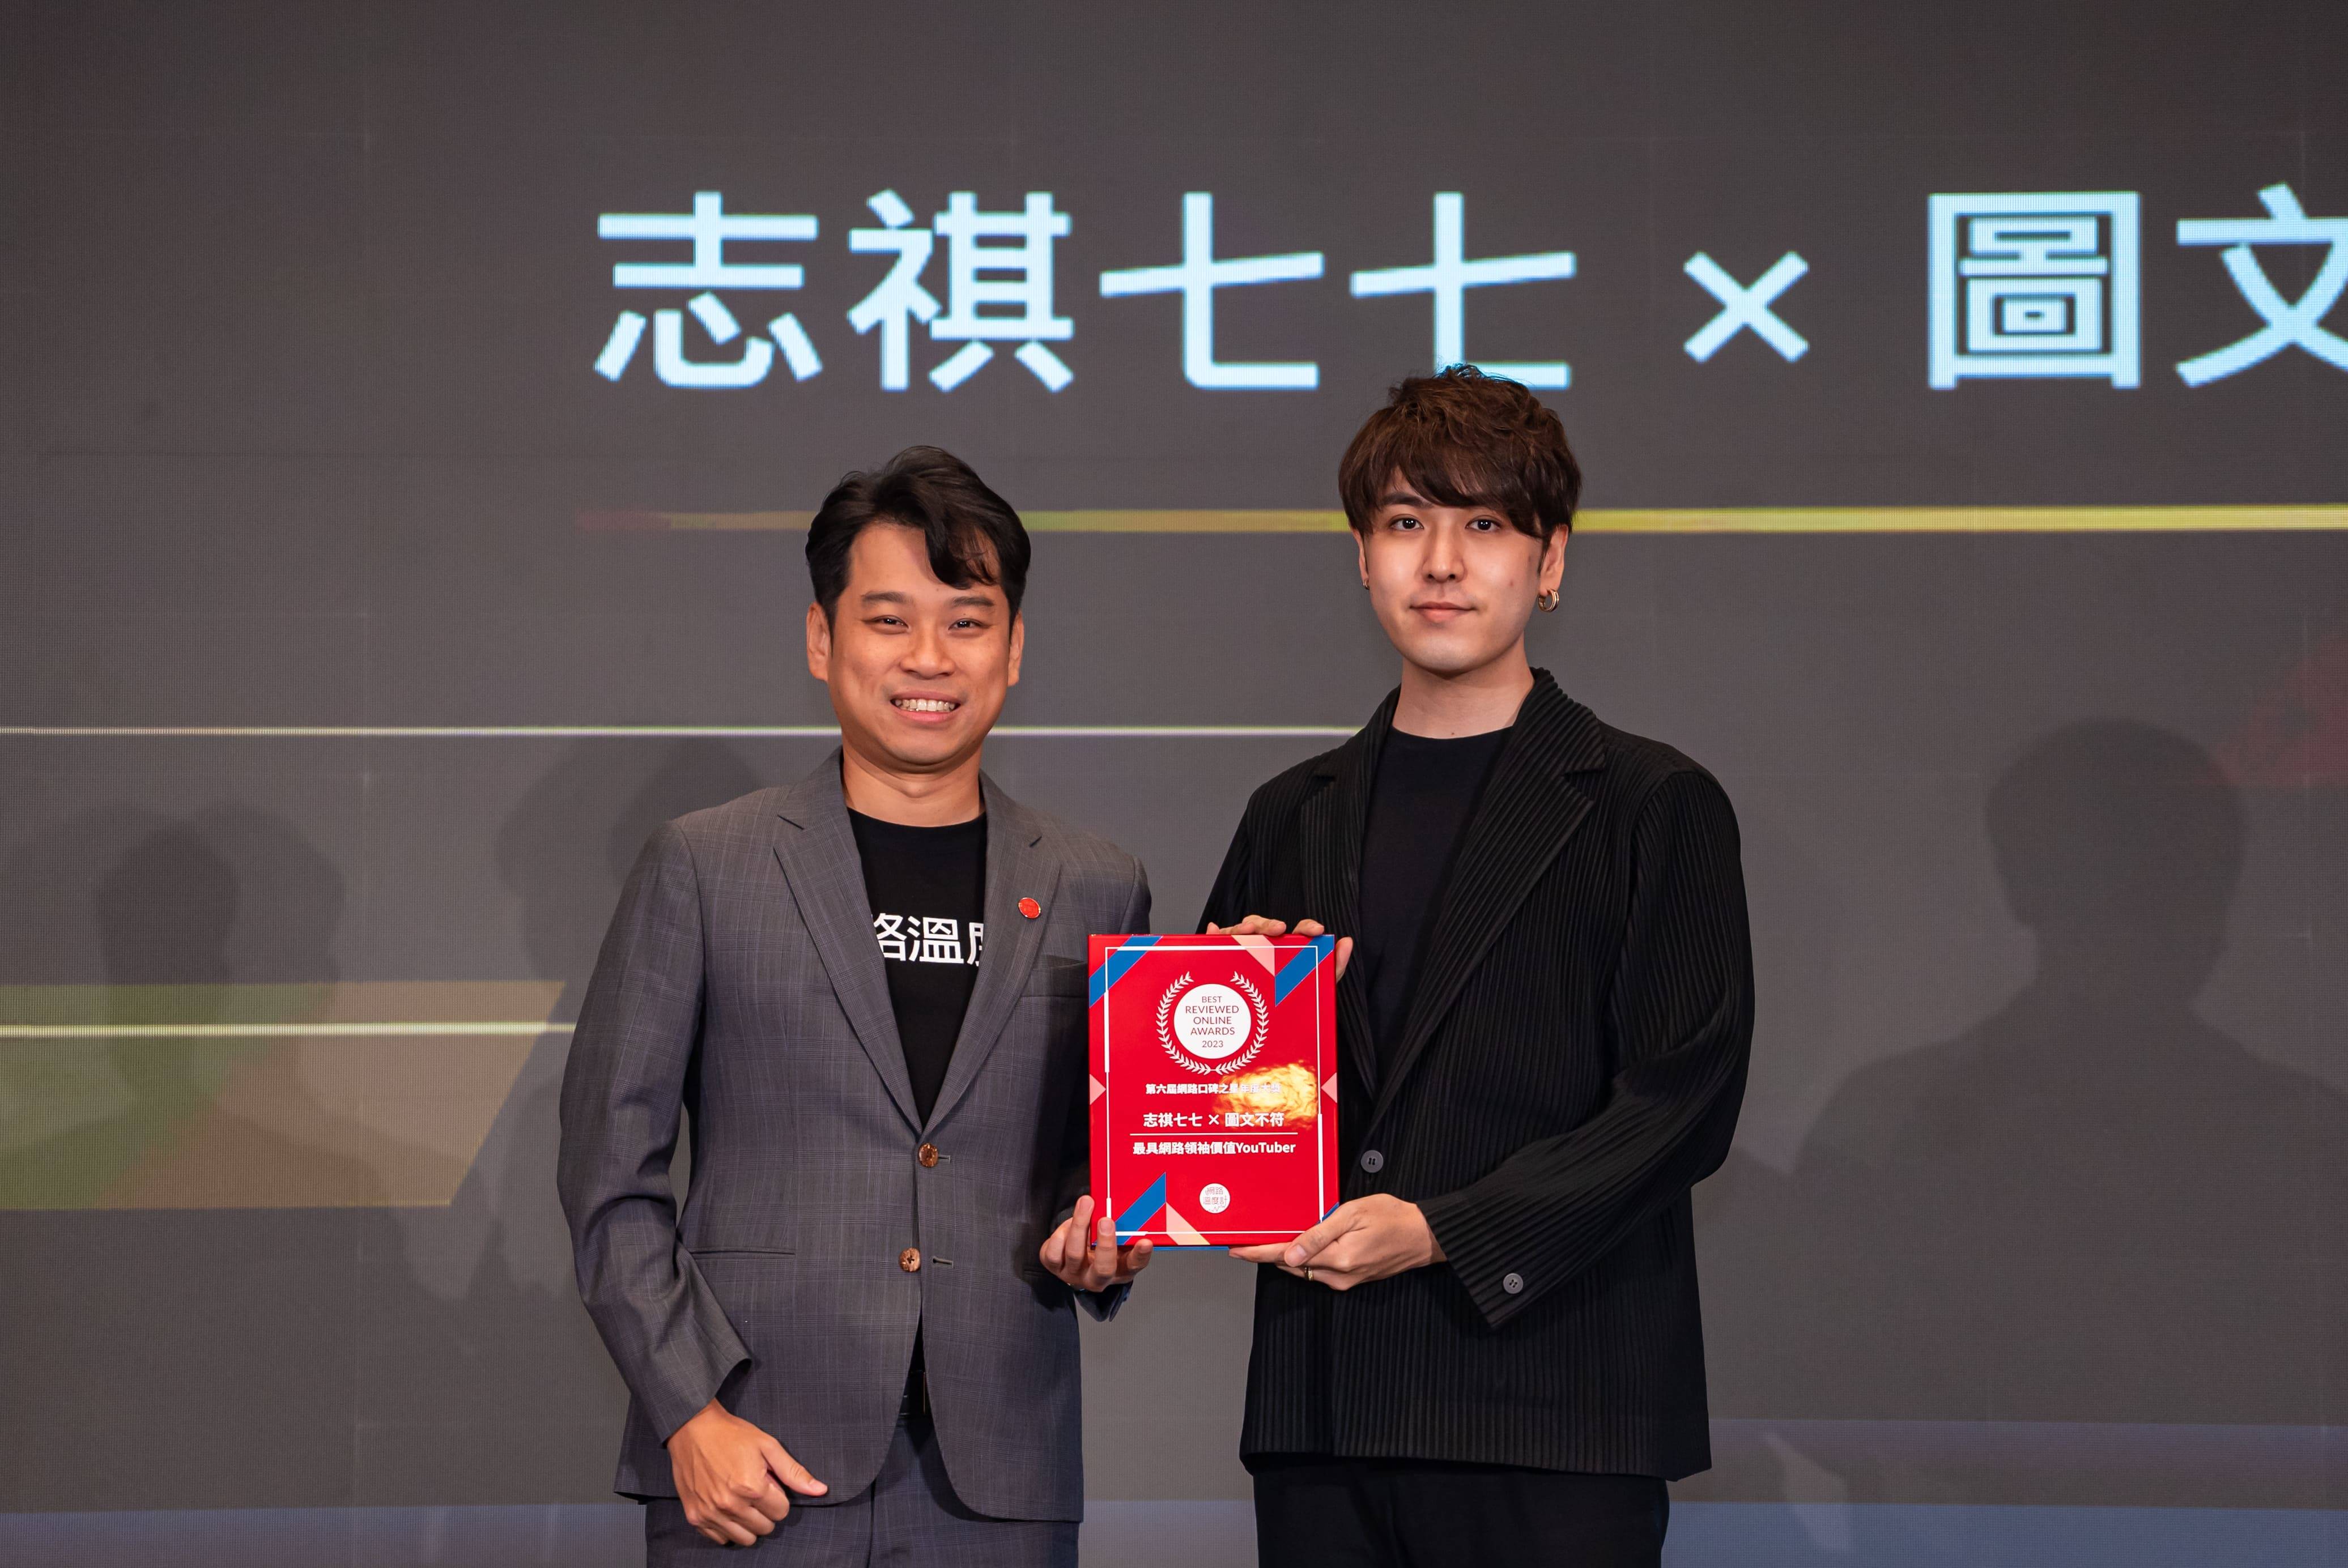 《DailyView網路溫度計》共同創辦人金志丞（左）親自頒發網路名人「最具網路領袖價值YouTuber」給予志祺七七X圖文不符（右）。